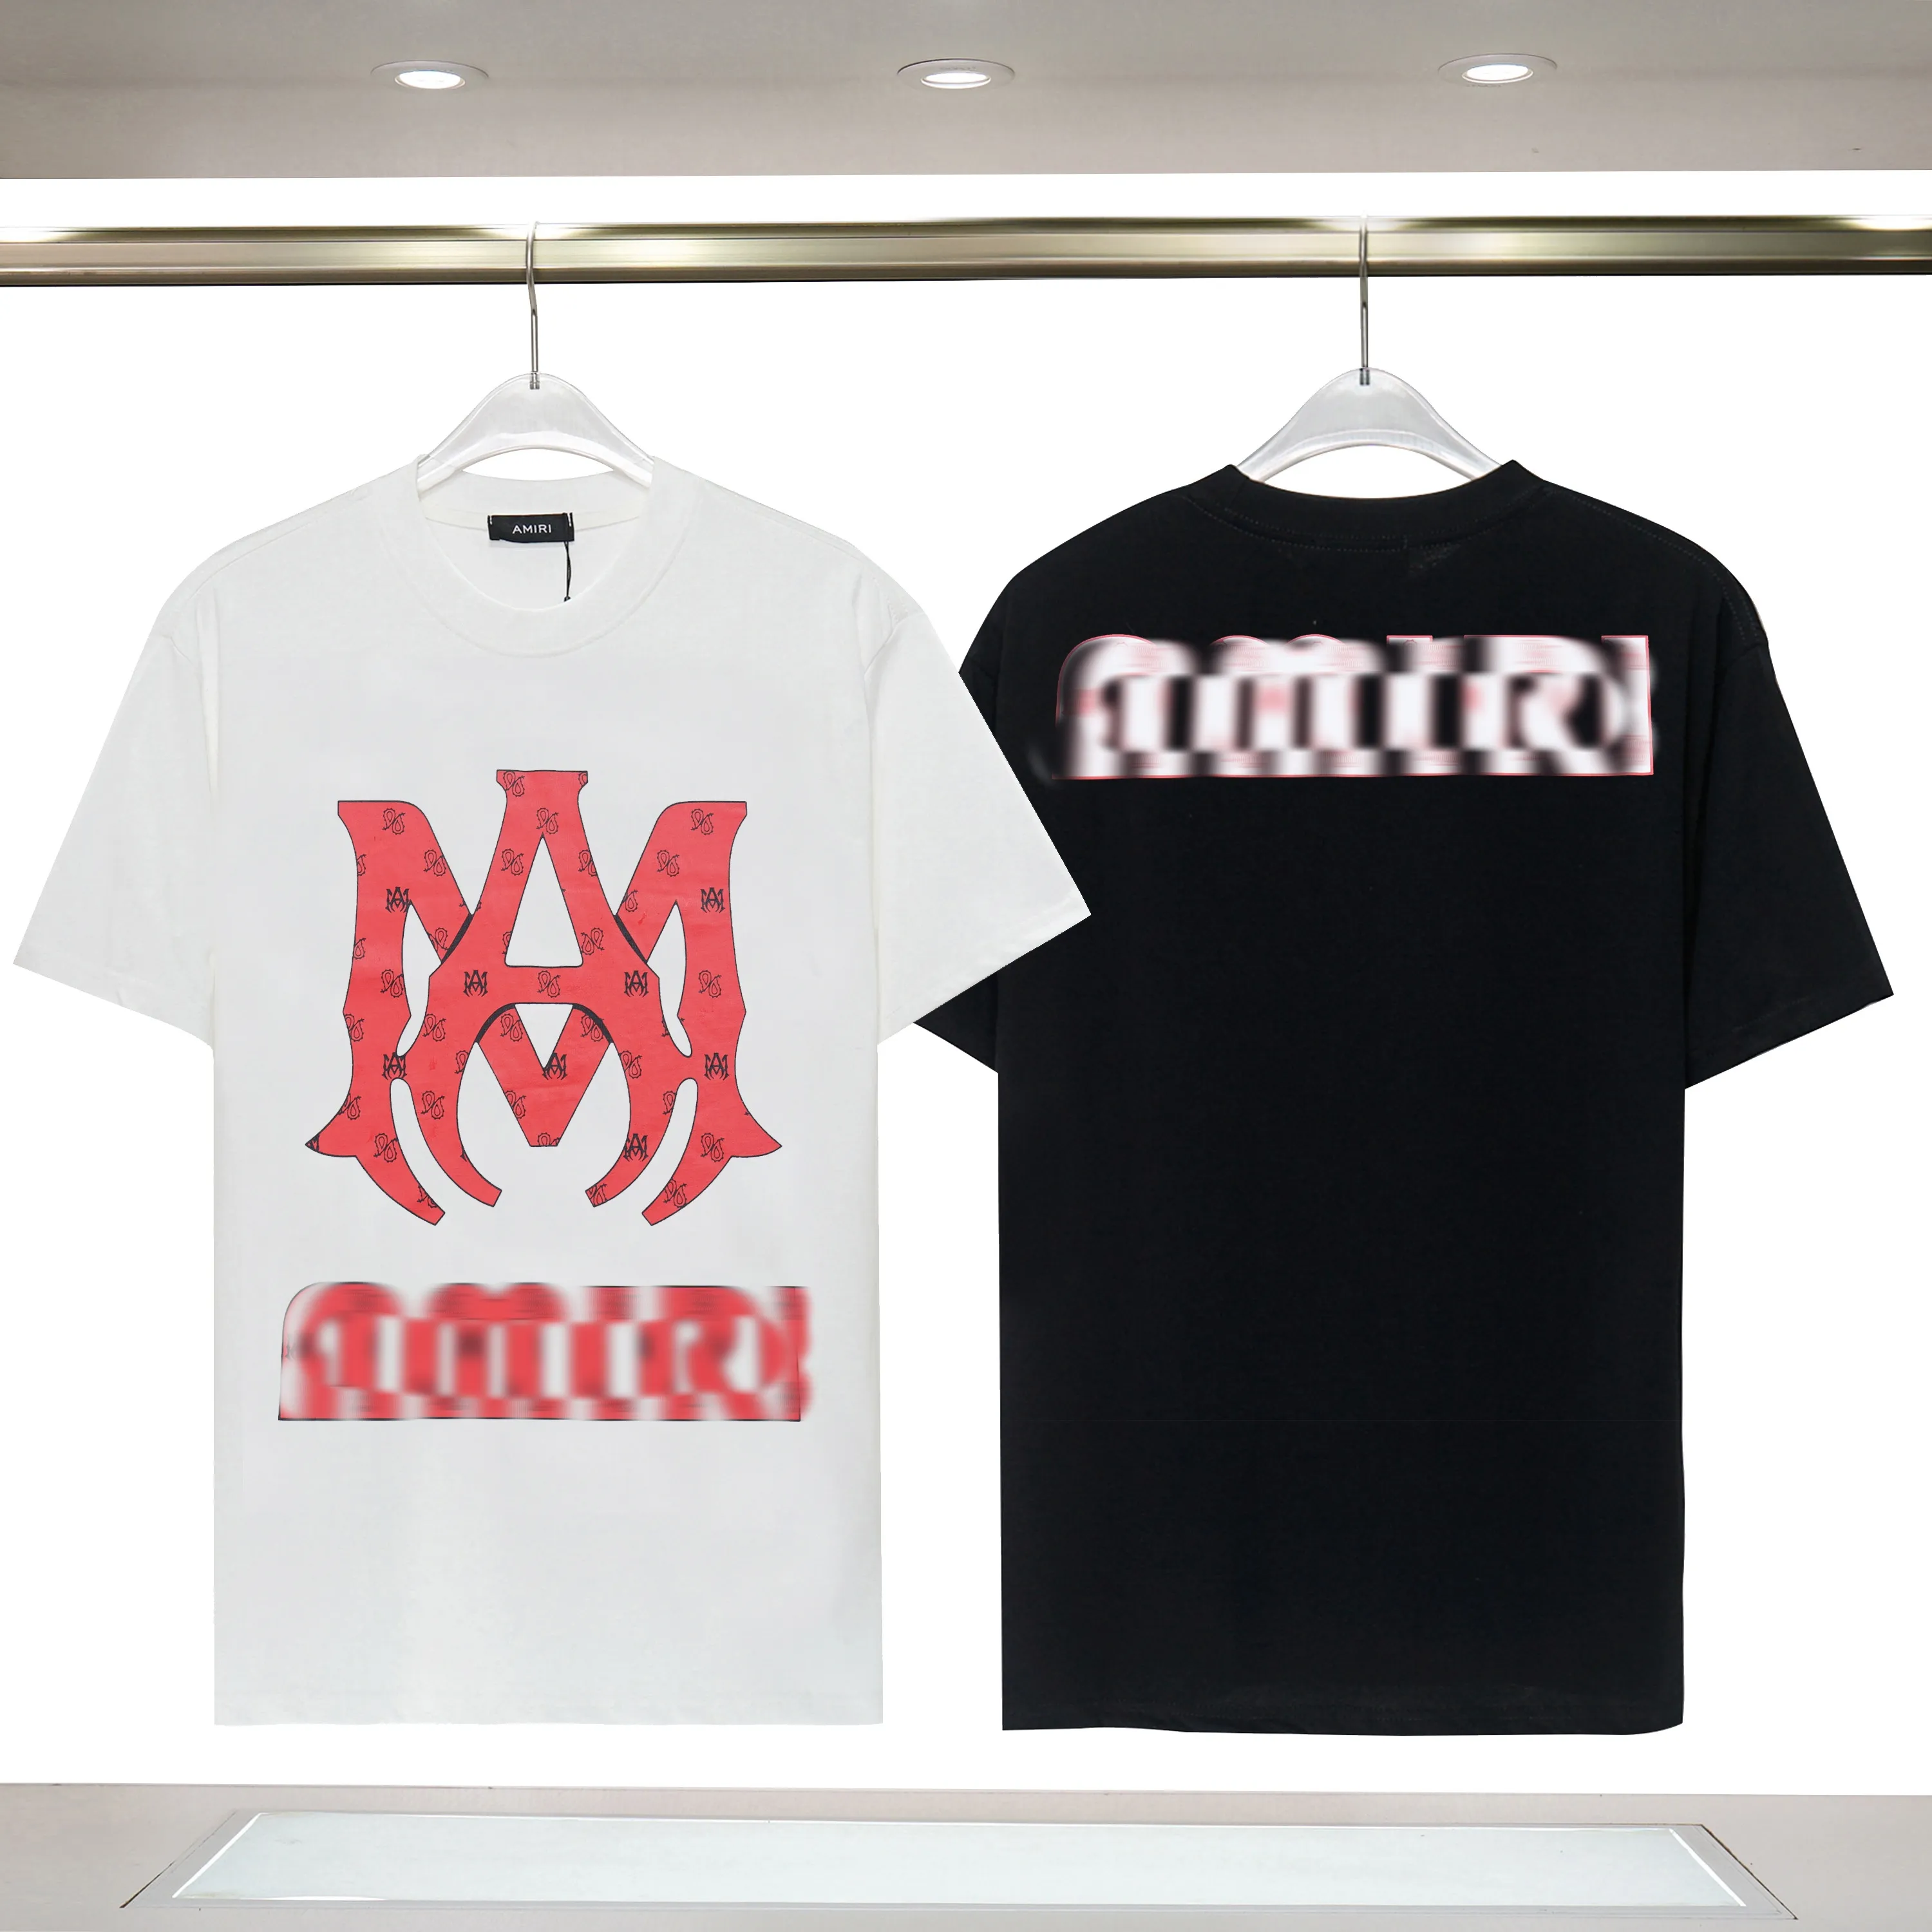 Avinie 1:I vendita calda estiva di moda AMI marchio marchio lettera Logo RI modello t-shirt da uomo di alta qualità